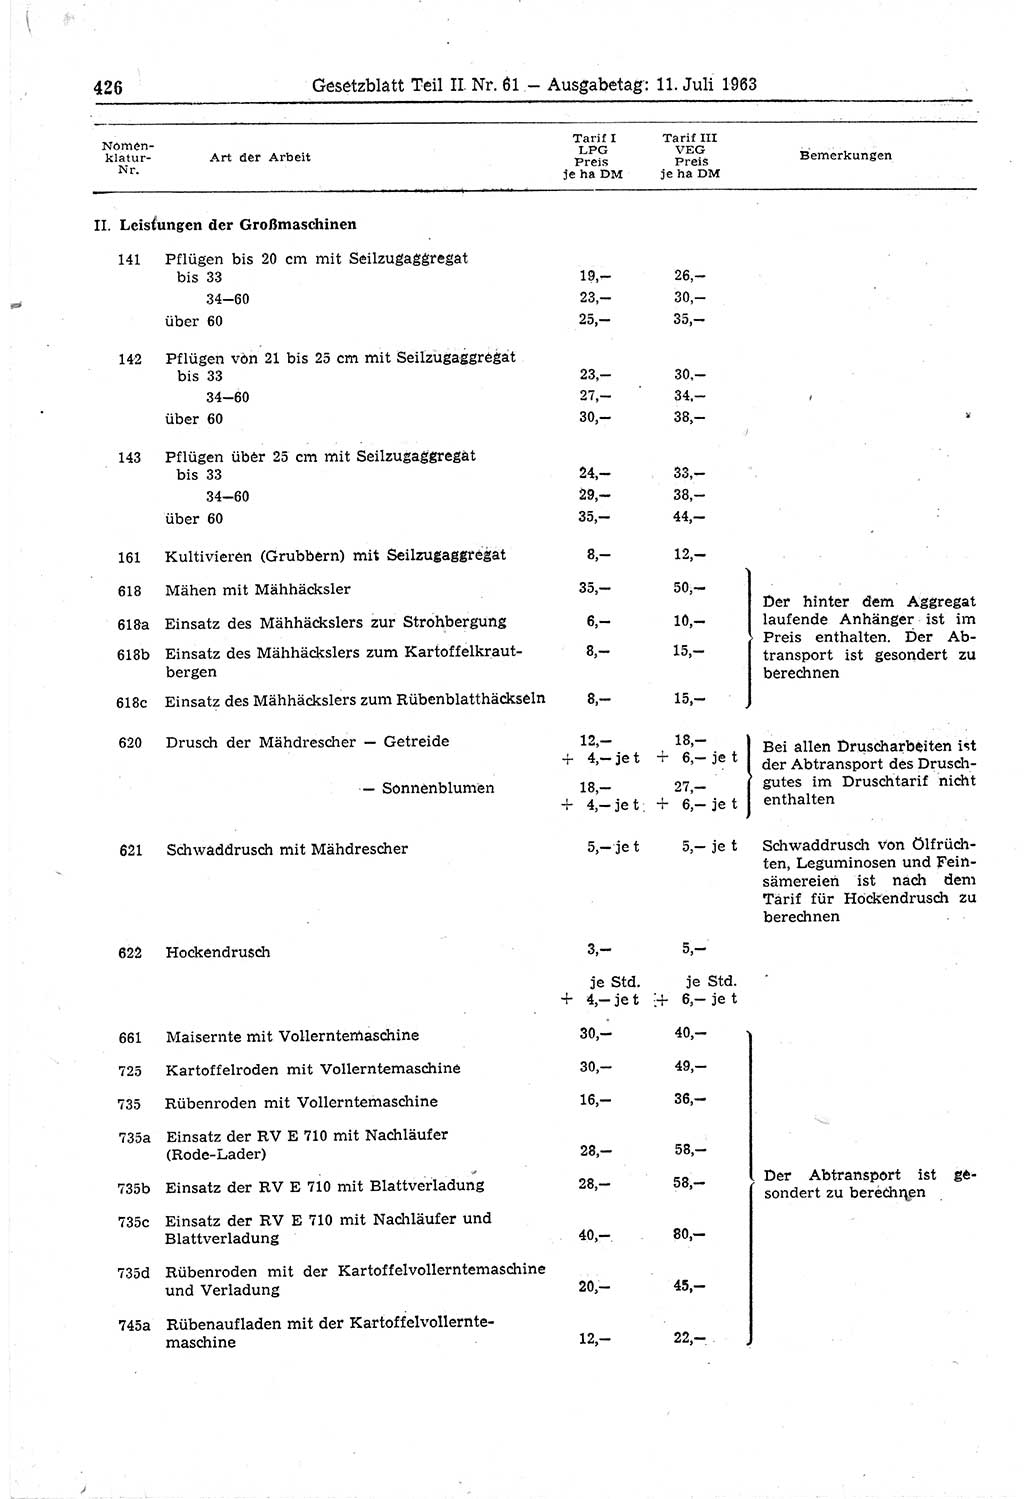 Gesetzblatt (GBl.) der Deutschen Demokratischen Republik (DDR) Teil ⅠⅠ 1963, Seite 426 (GBl. DDR ⅠⅠ 1963, S. 426)